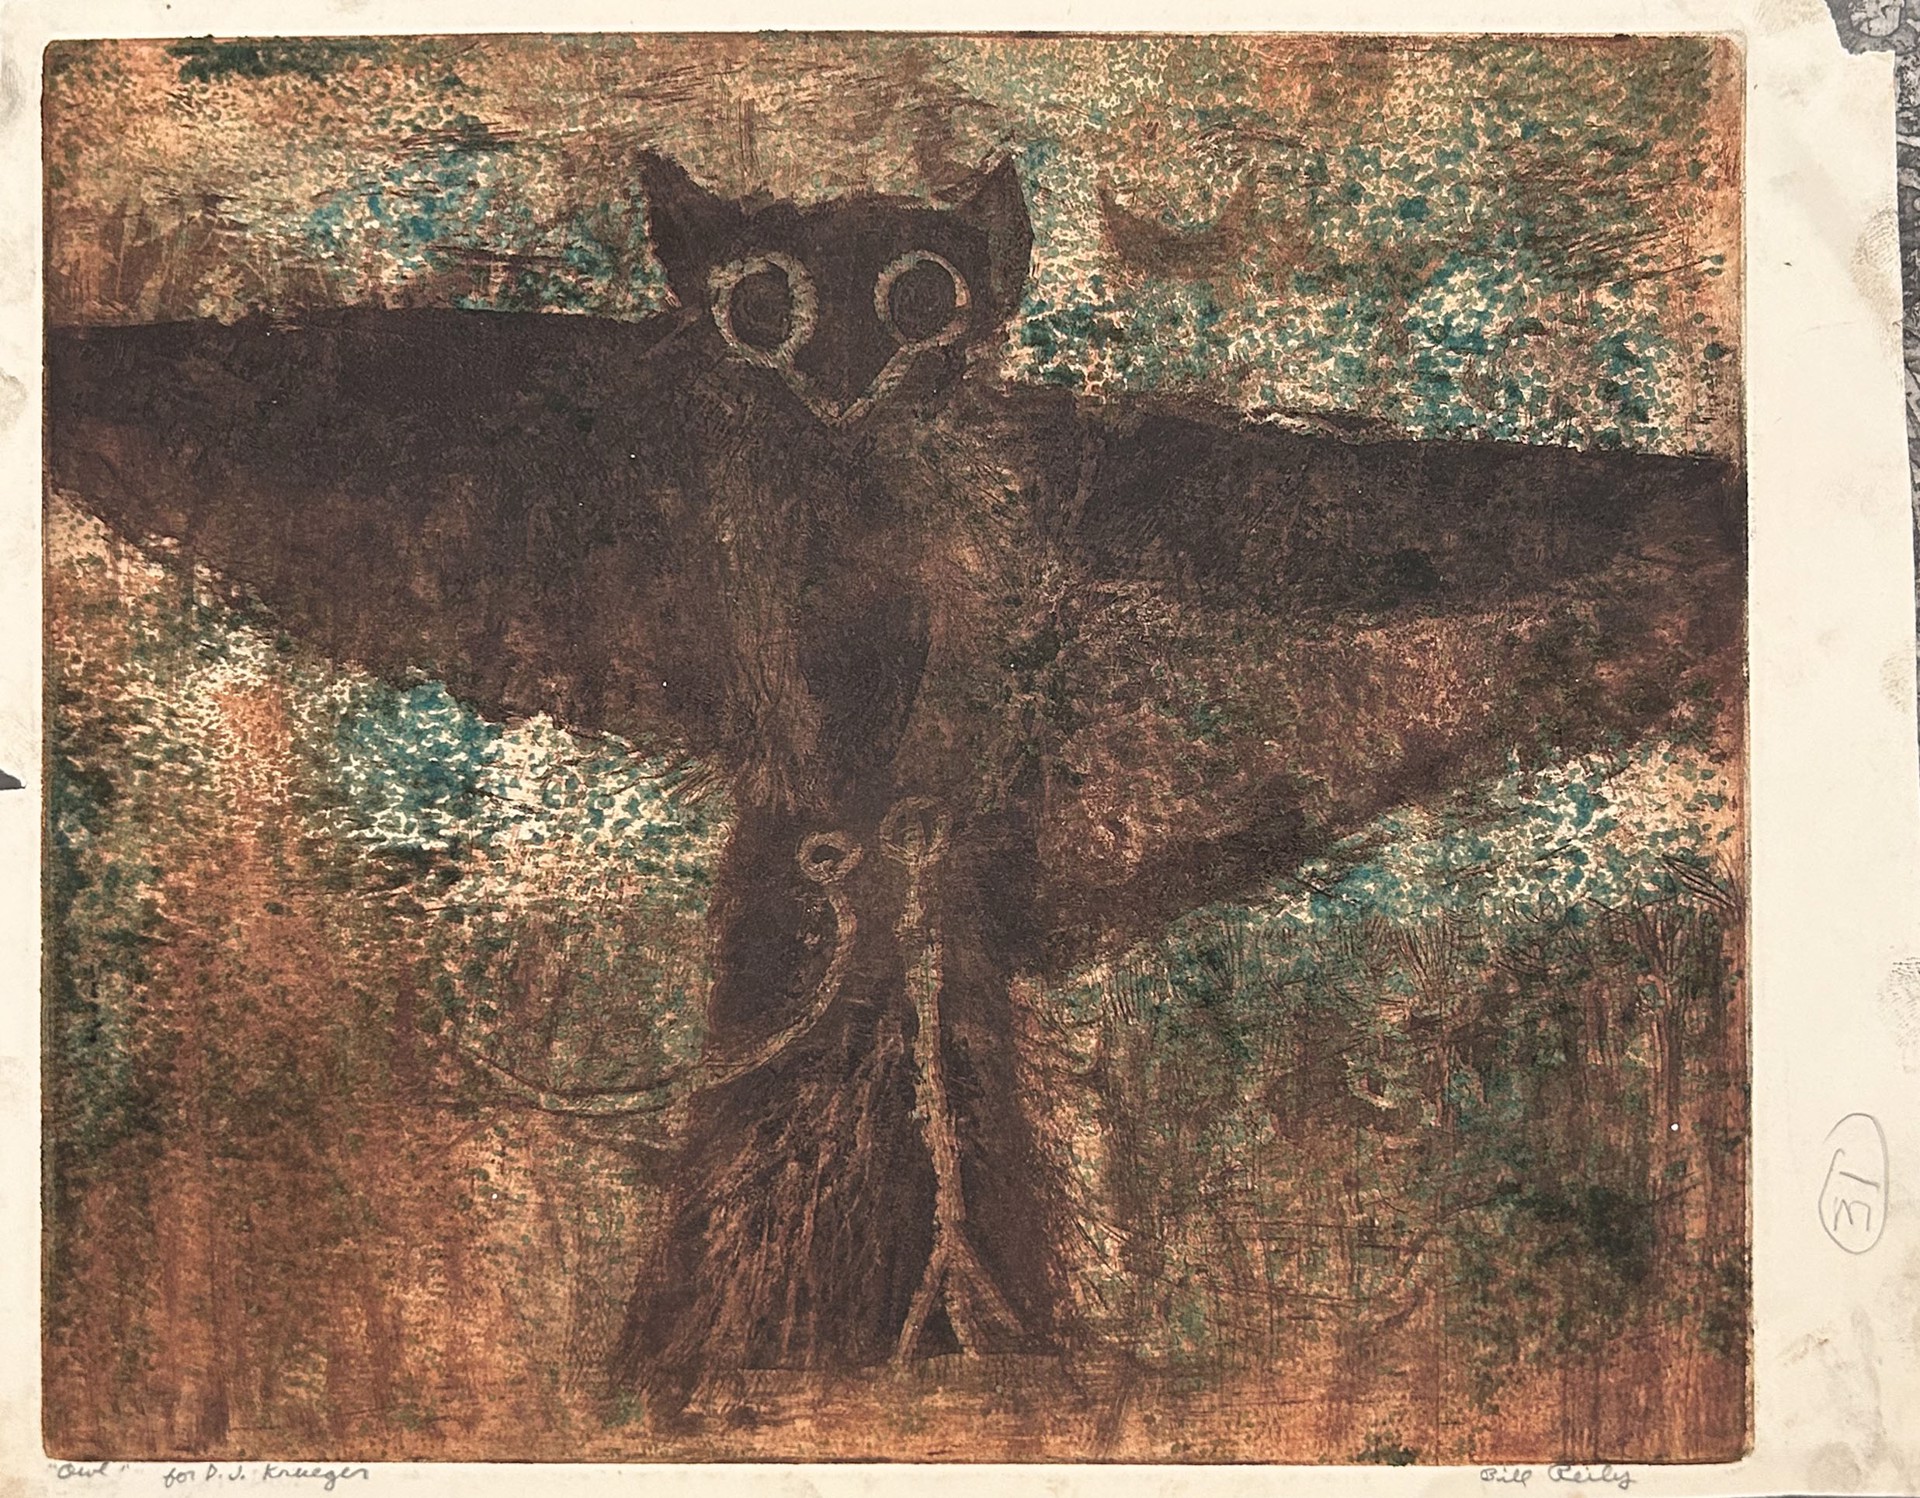 31c. Owl by Bill Reily Prints